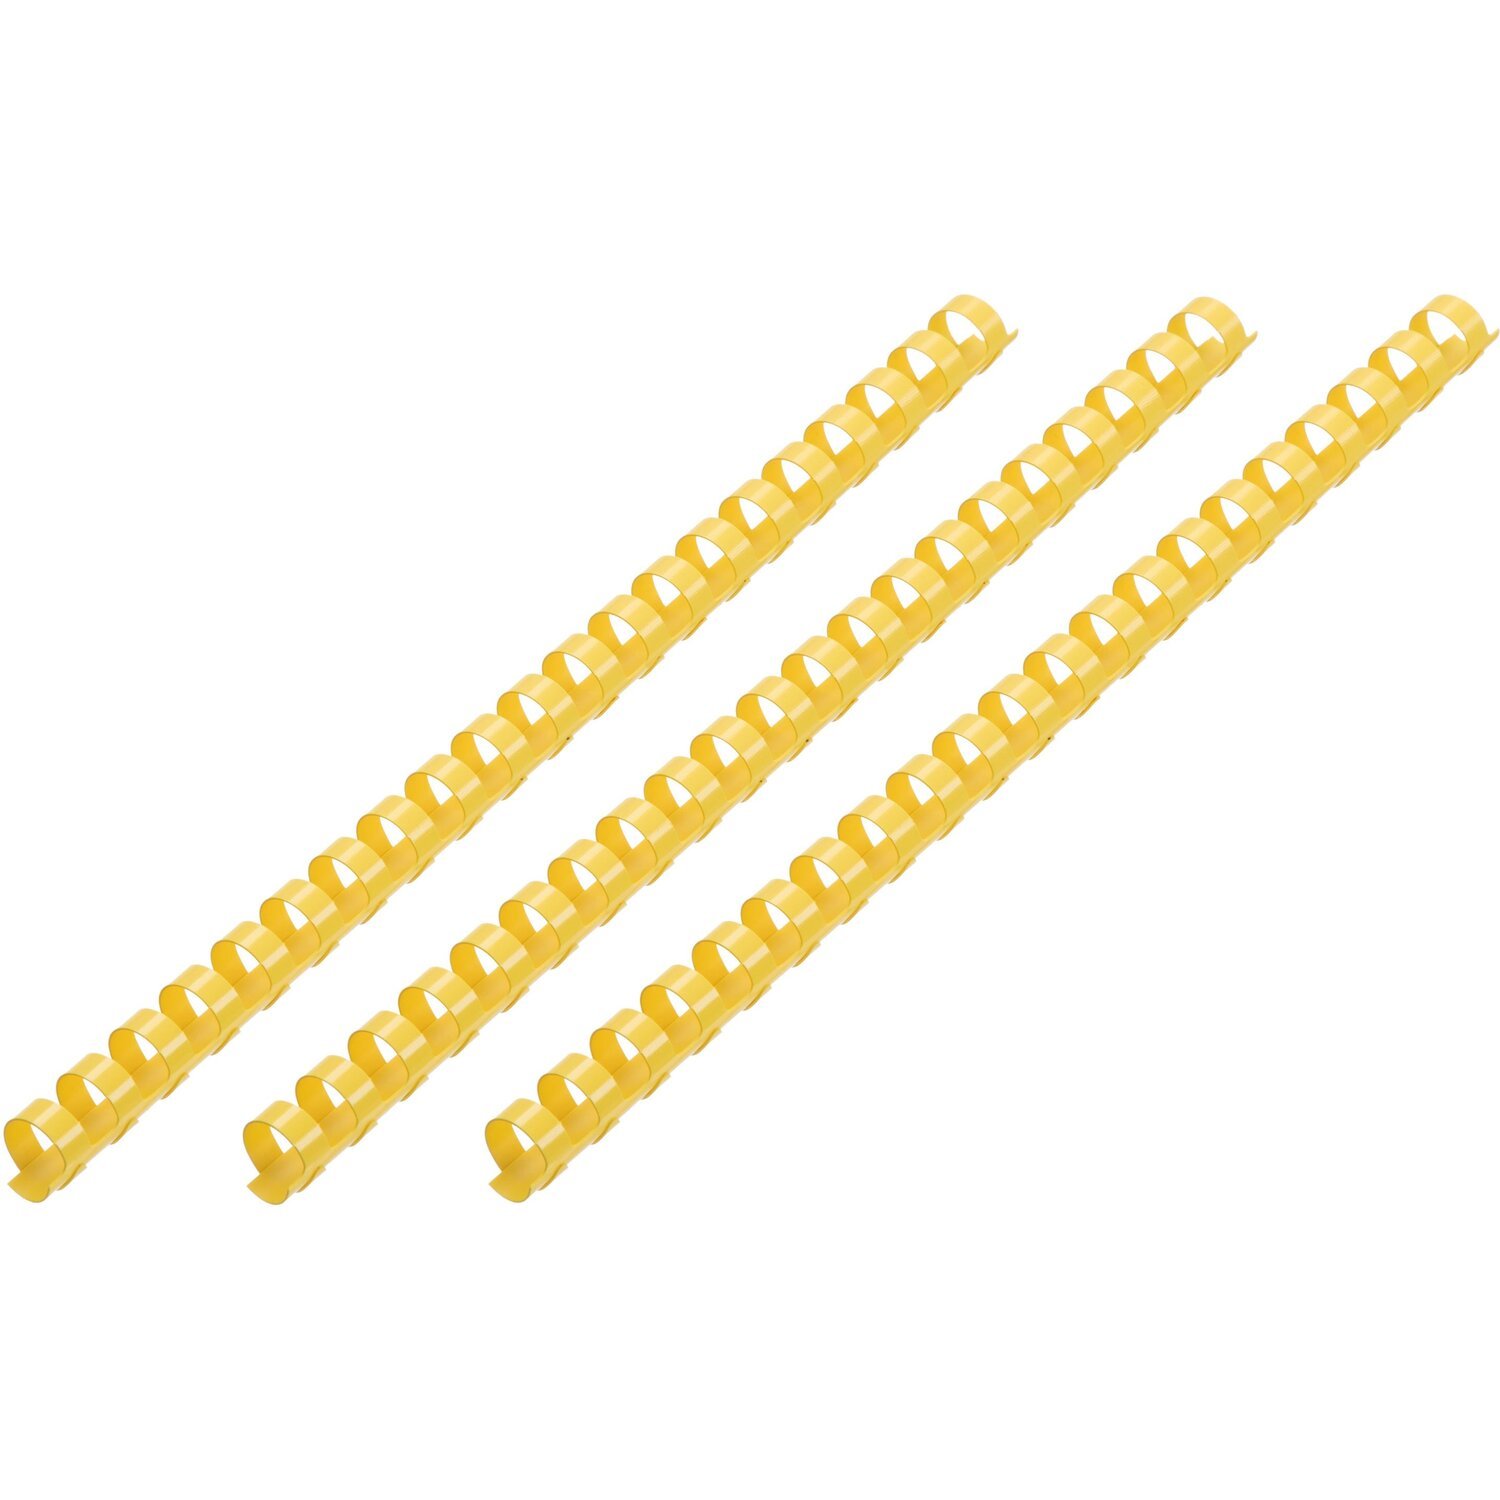 Пластикові пружини для біндера 2E, 14мм, жовті, 100штфото